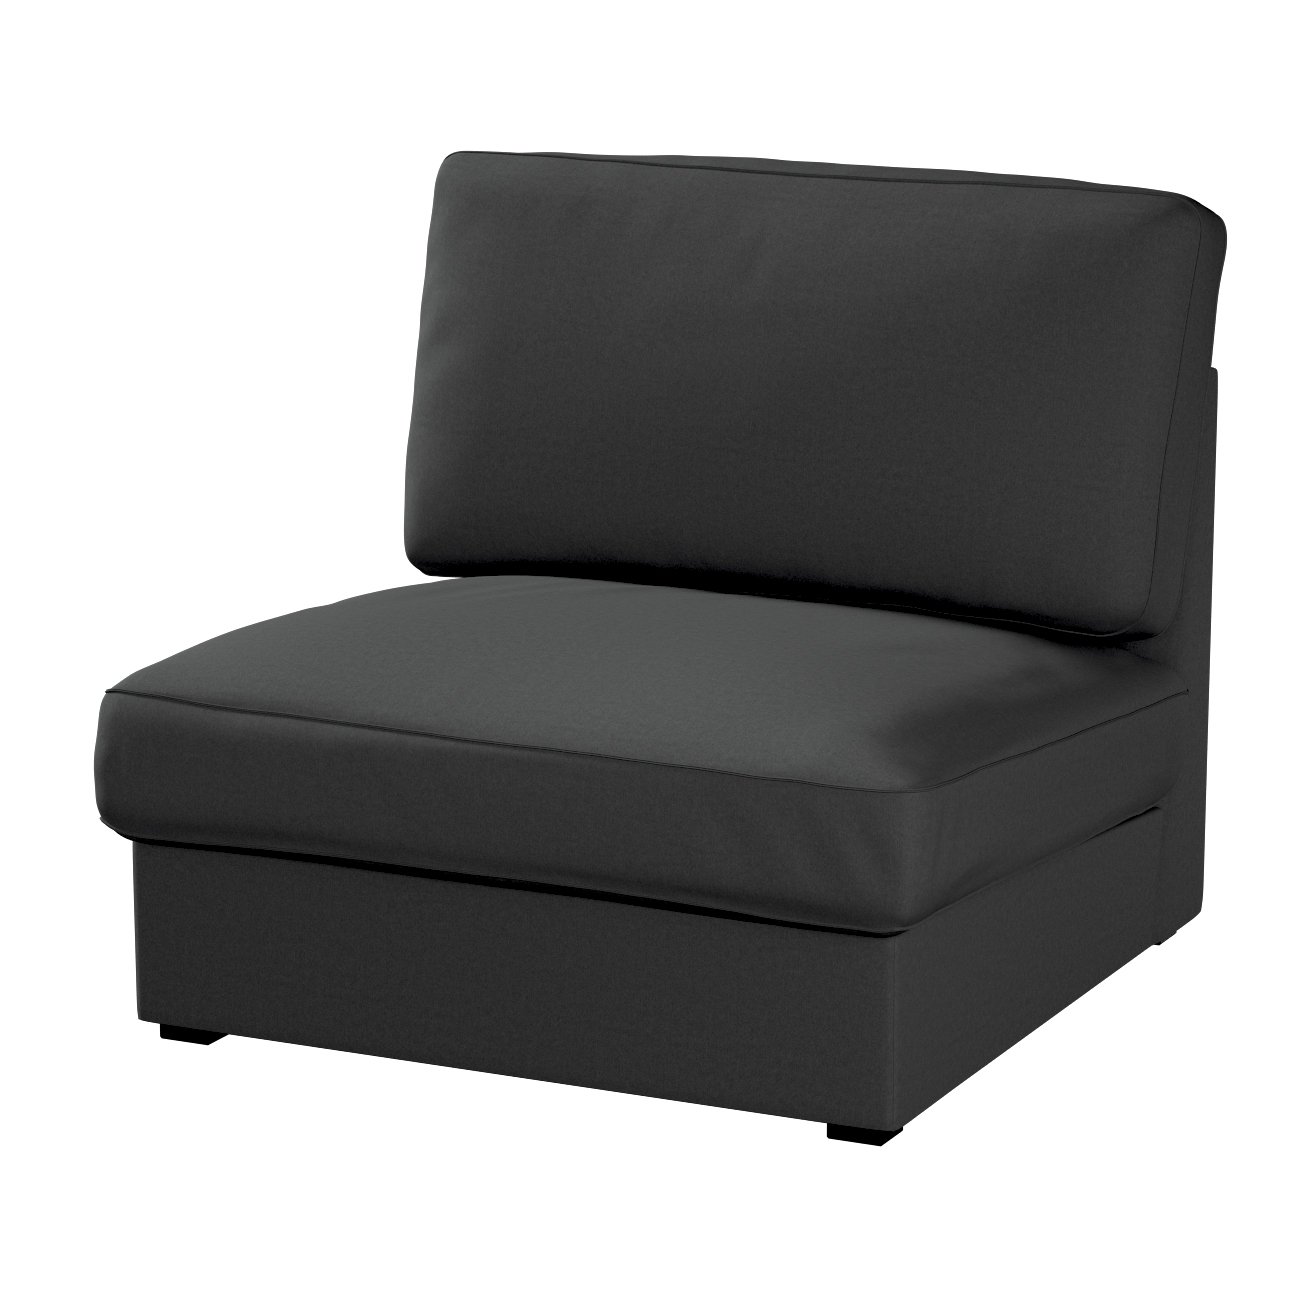 Bezug für Kivik Sessel nicht ausklappbar, schwarz, Bezug für Sessel Kivik, günstig online kaufen